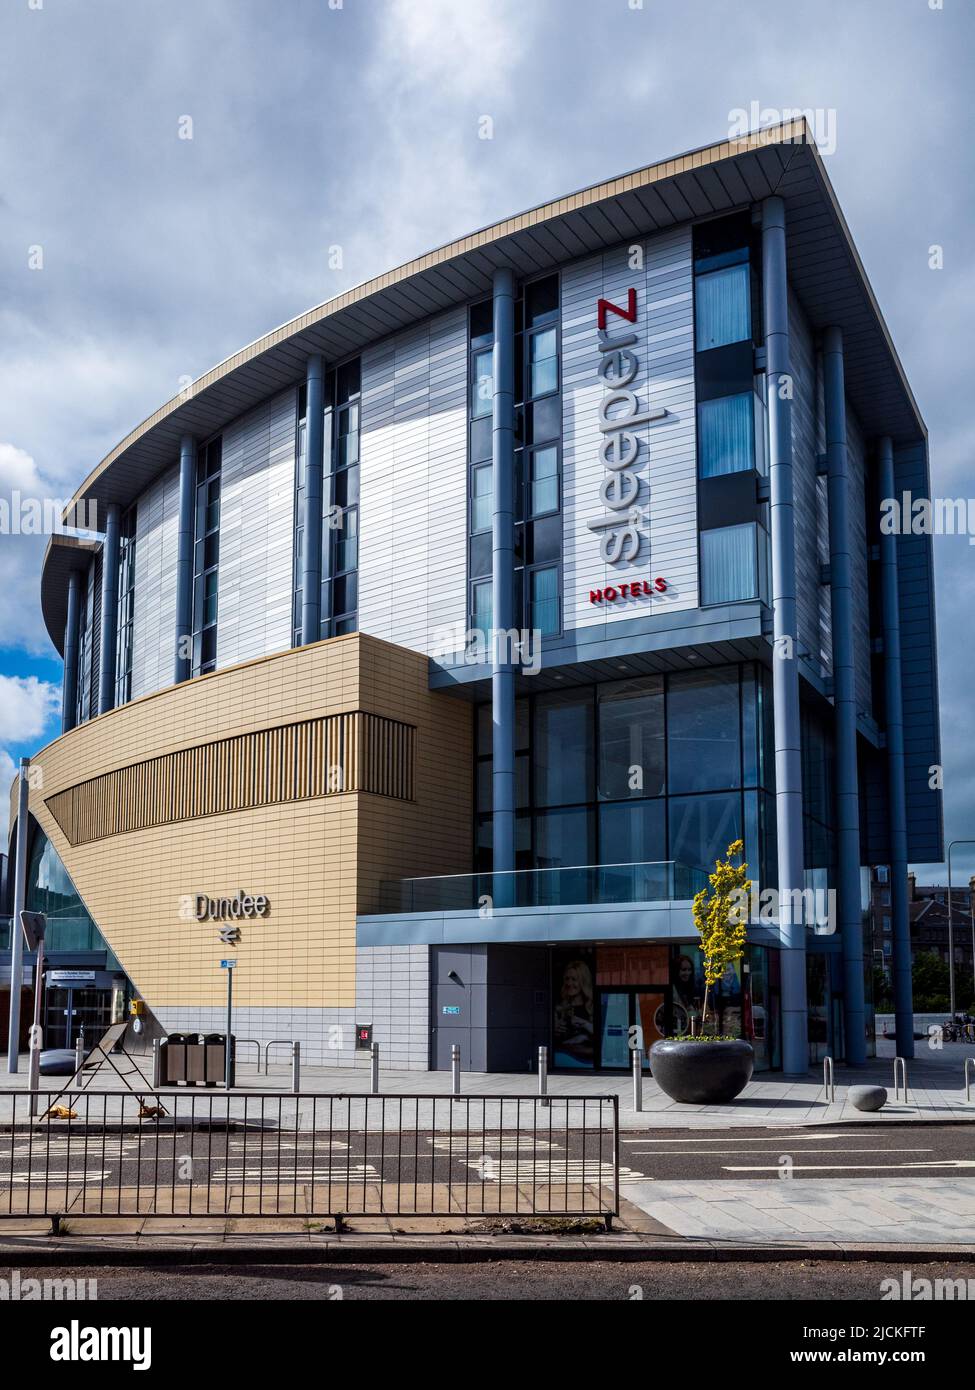 Estación de tren de Dundee y 120 camas Sleeperz Hotel - redesarrollado como parte del proyecto de Dundee Waterfront, 2018. Arquitecto Nicoll Russell Studios Foto de stock